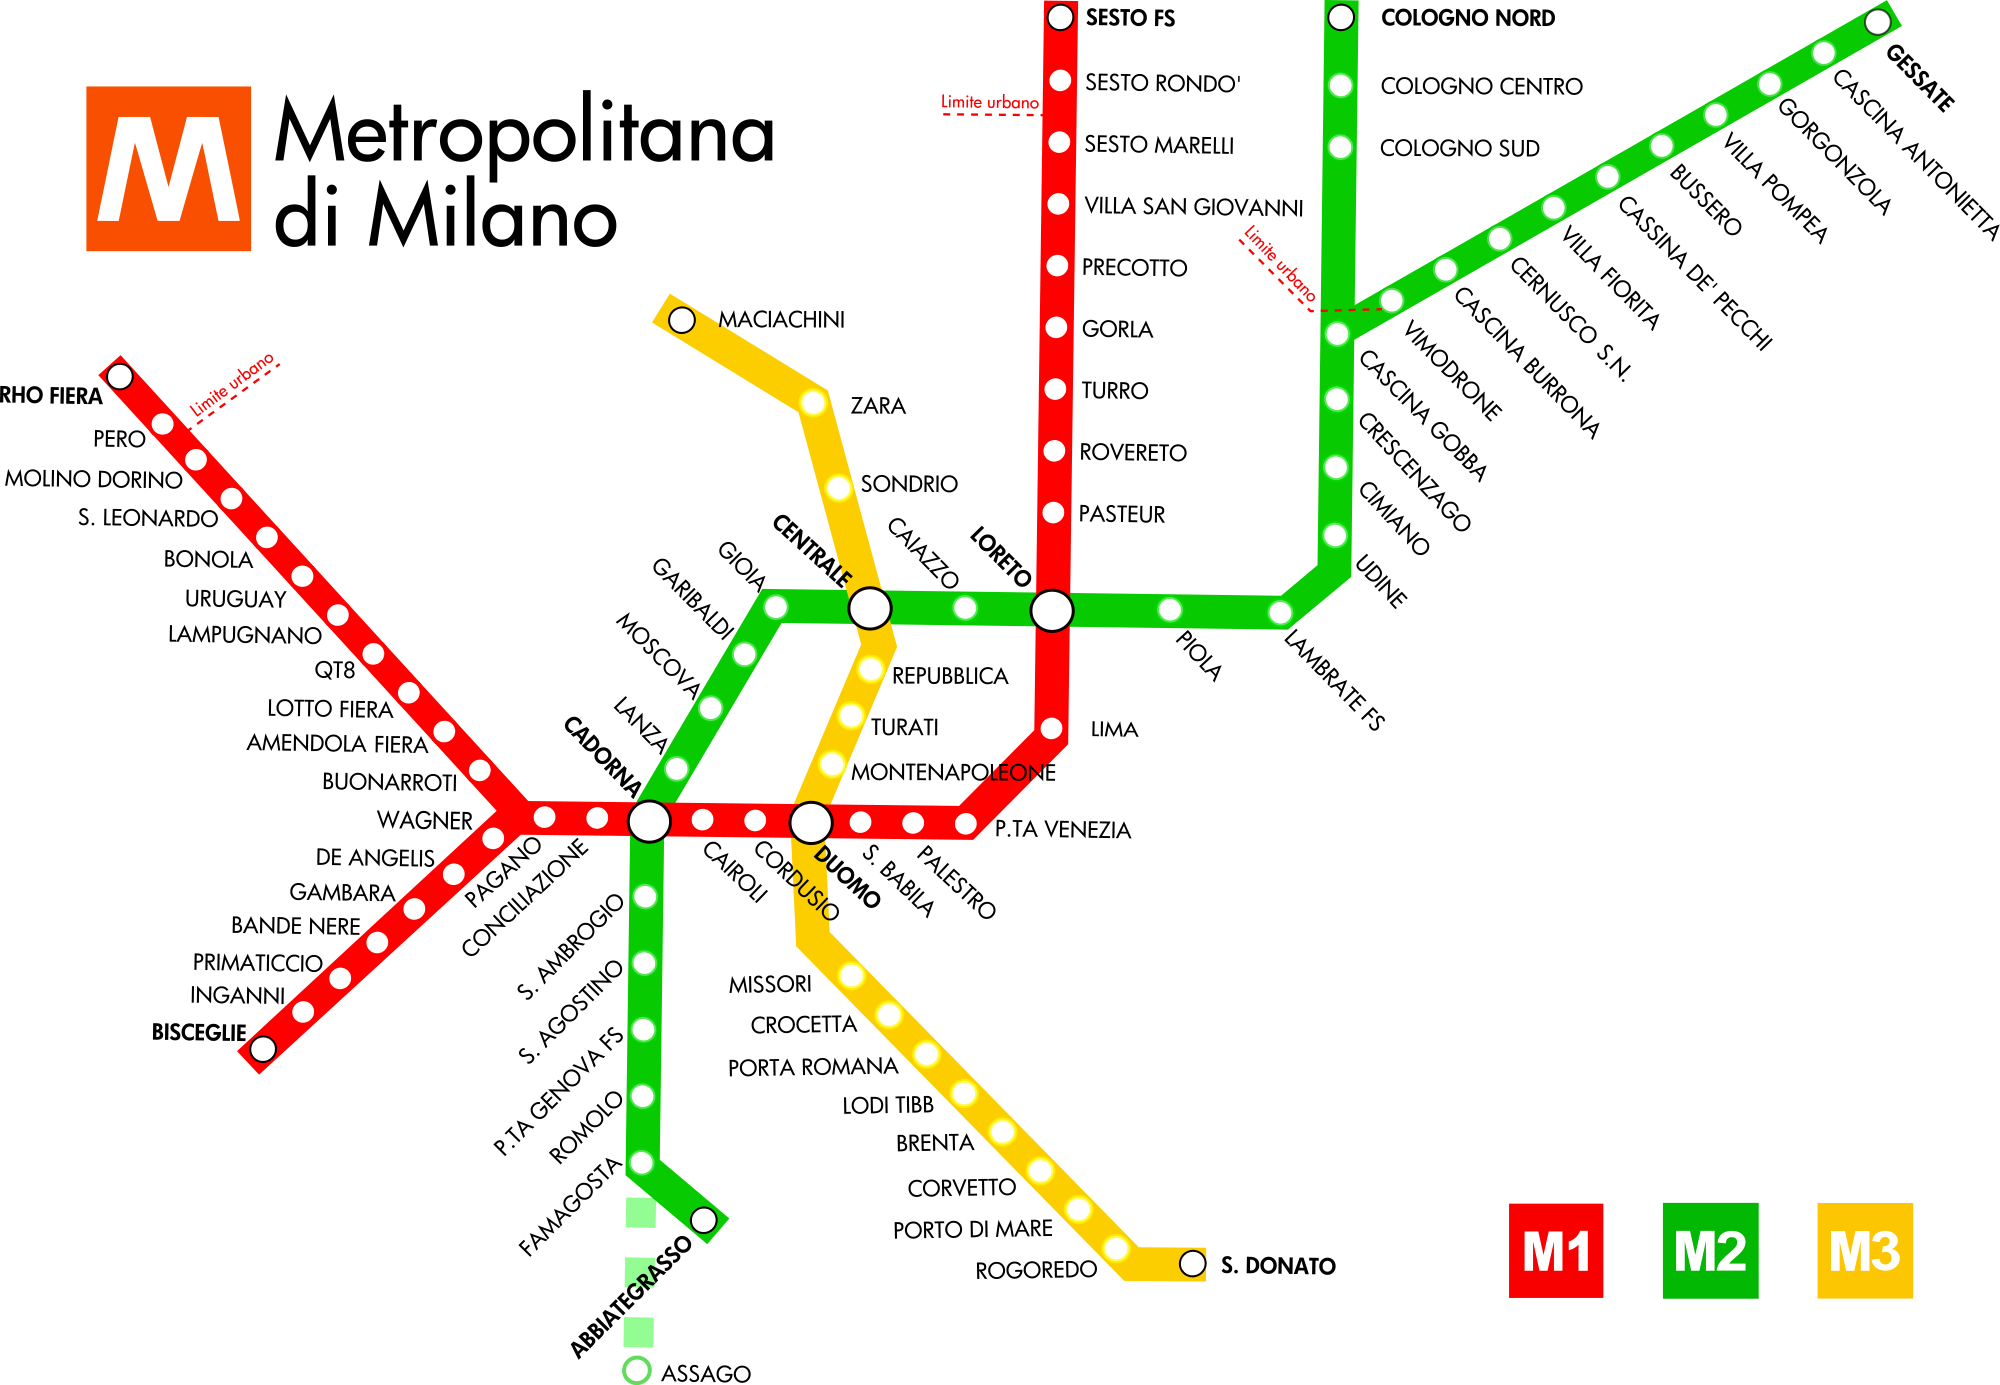 Milan metro map, Italy